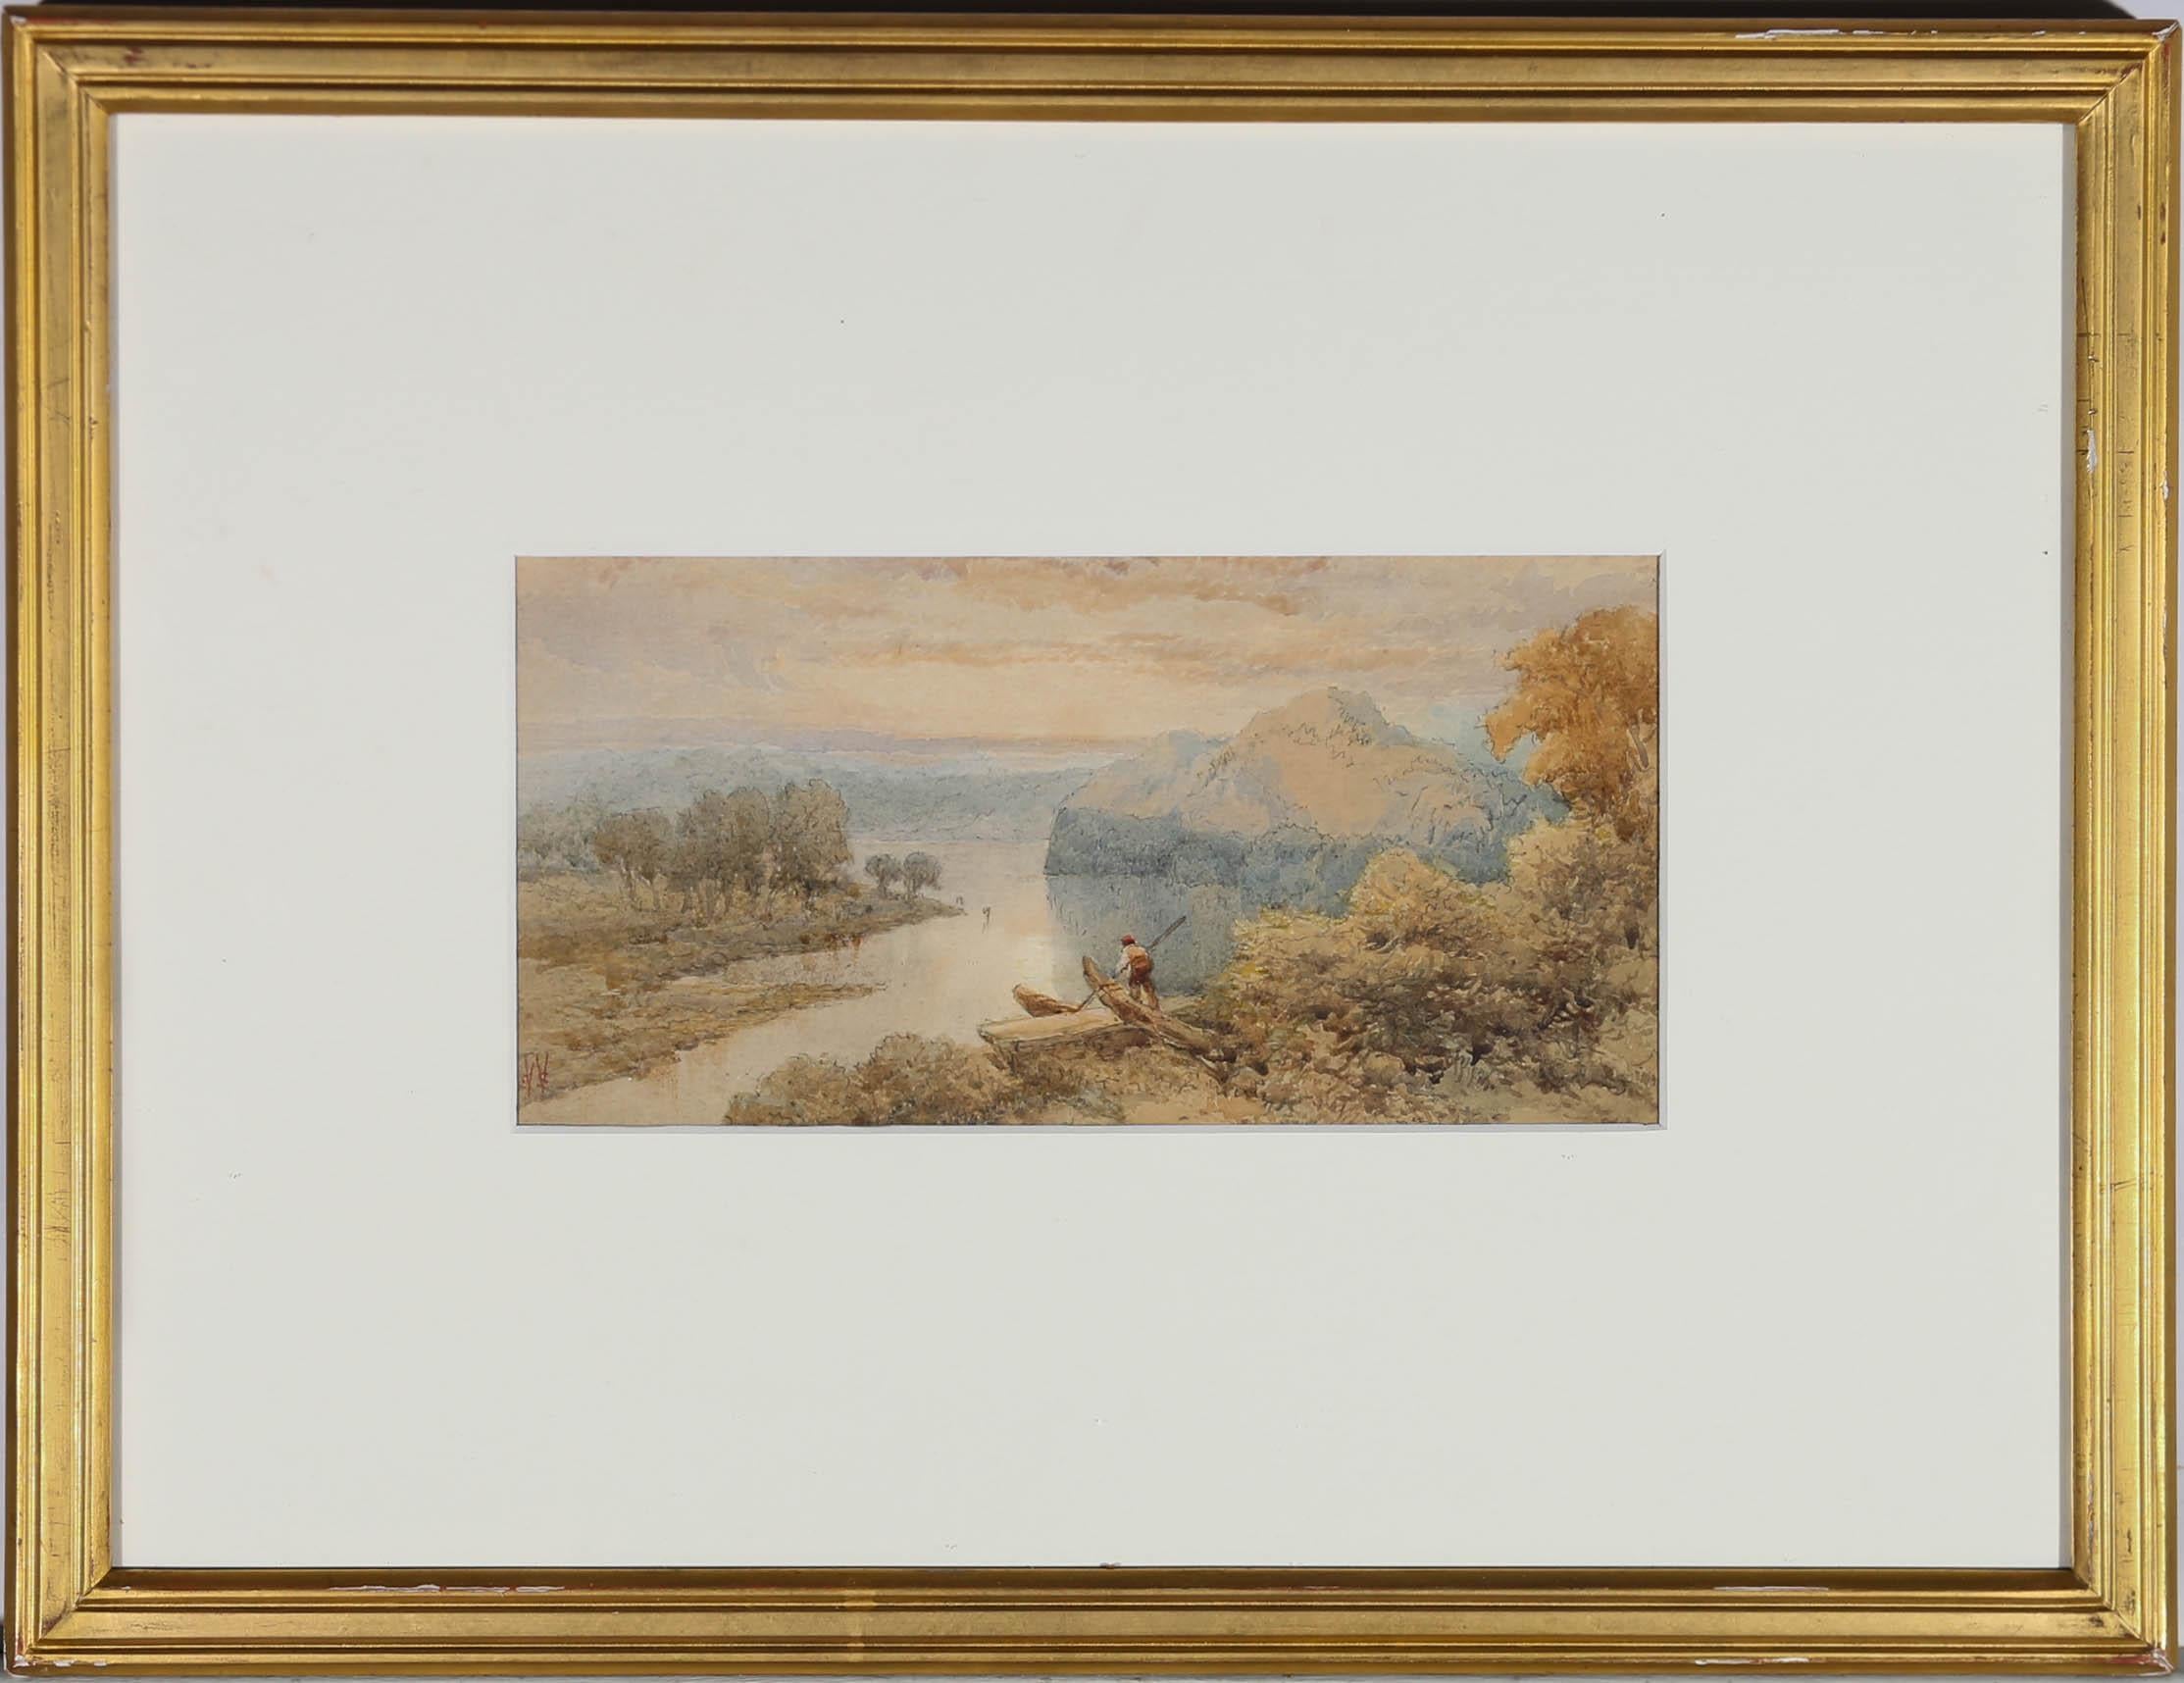 Un bel exemple d'aquarelle du milieu du XIXe siècle représentant un vaste paysage fluvial à l'aube. Un homme debout dans son bateau au premier plan, qui fait du bateau à rames dans la lumière du soleil. L'artiste capture l'atmosphère douce de la